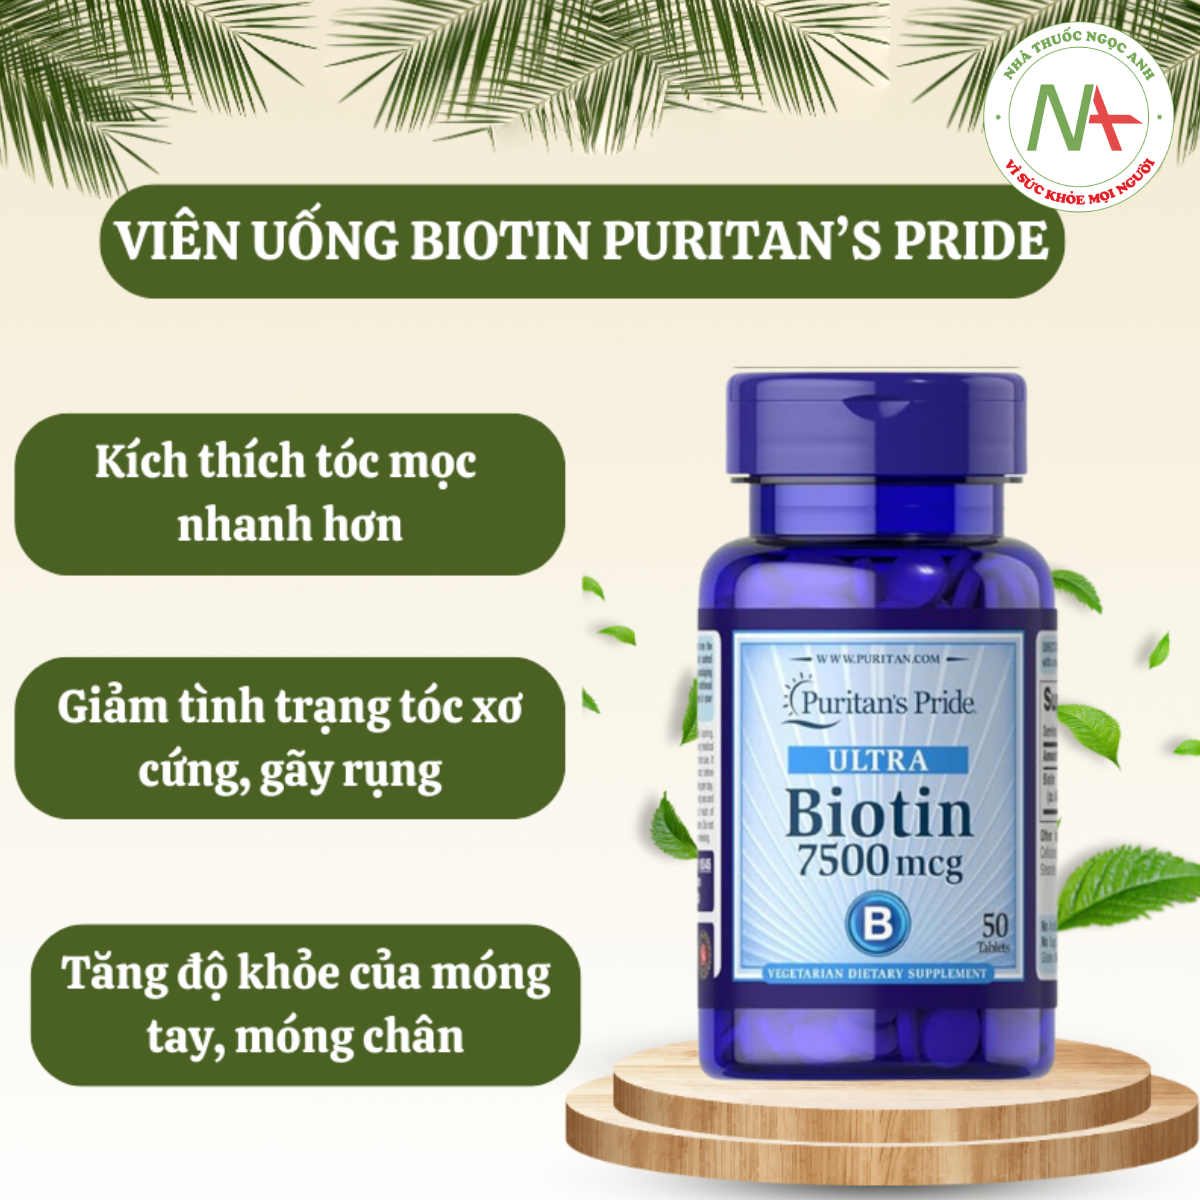 Ultra Biotin 7500mcg Puritan's Pride giúp dưỡng tóc, dưỡng móng, đẹp da